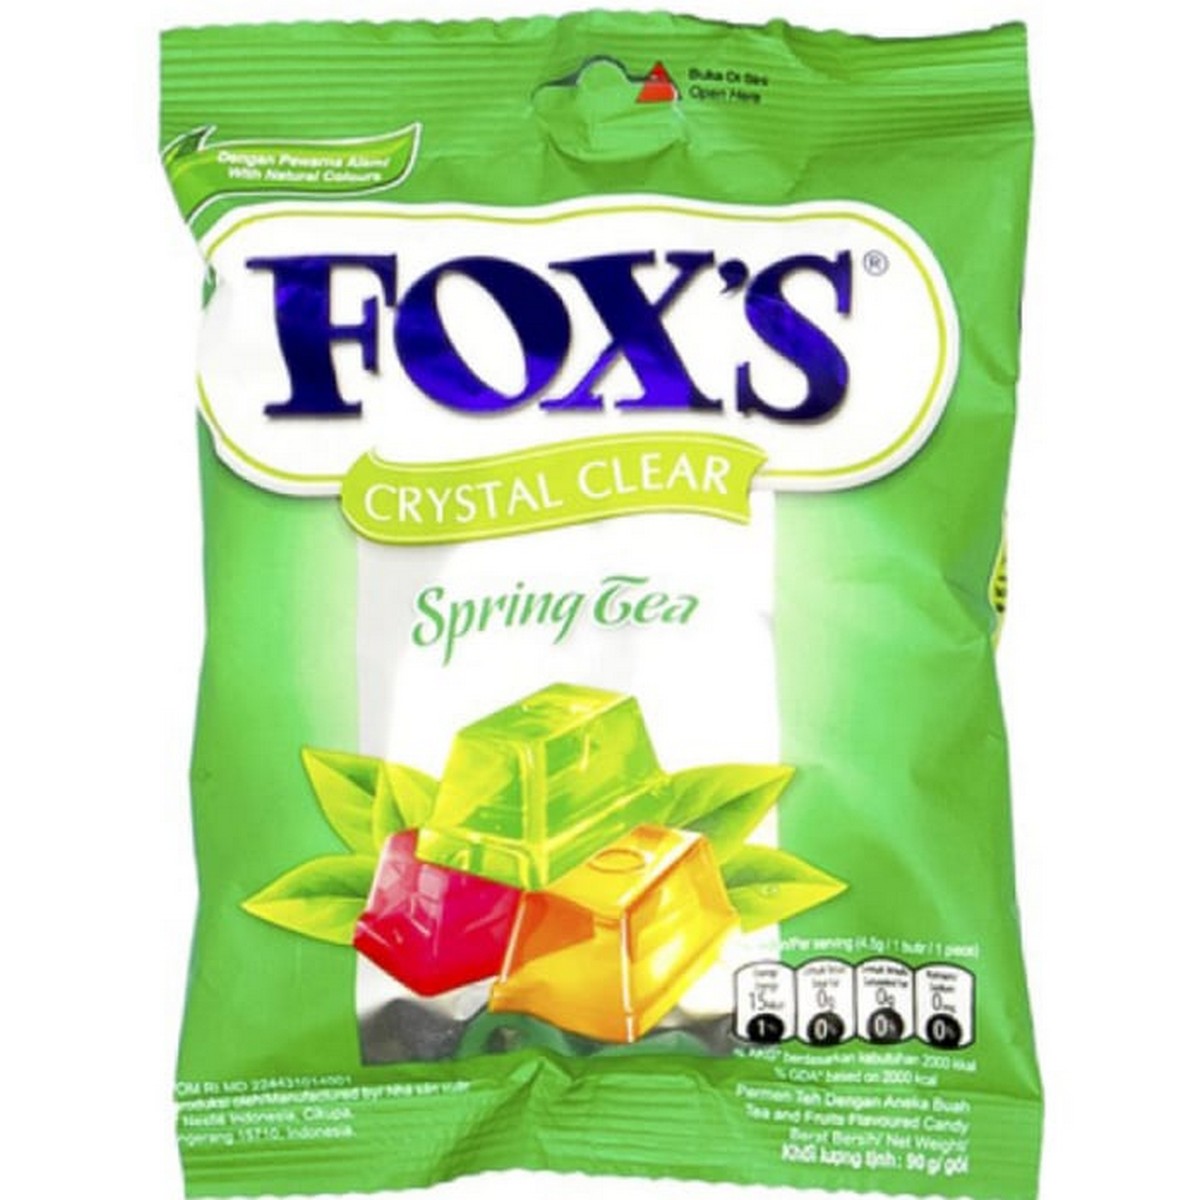 Fox's Crystal Clear Spring Tea Candy 90g